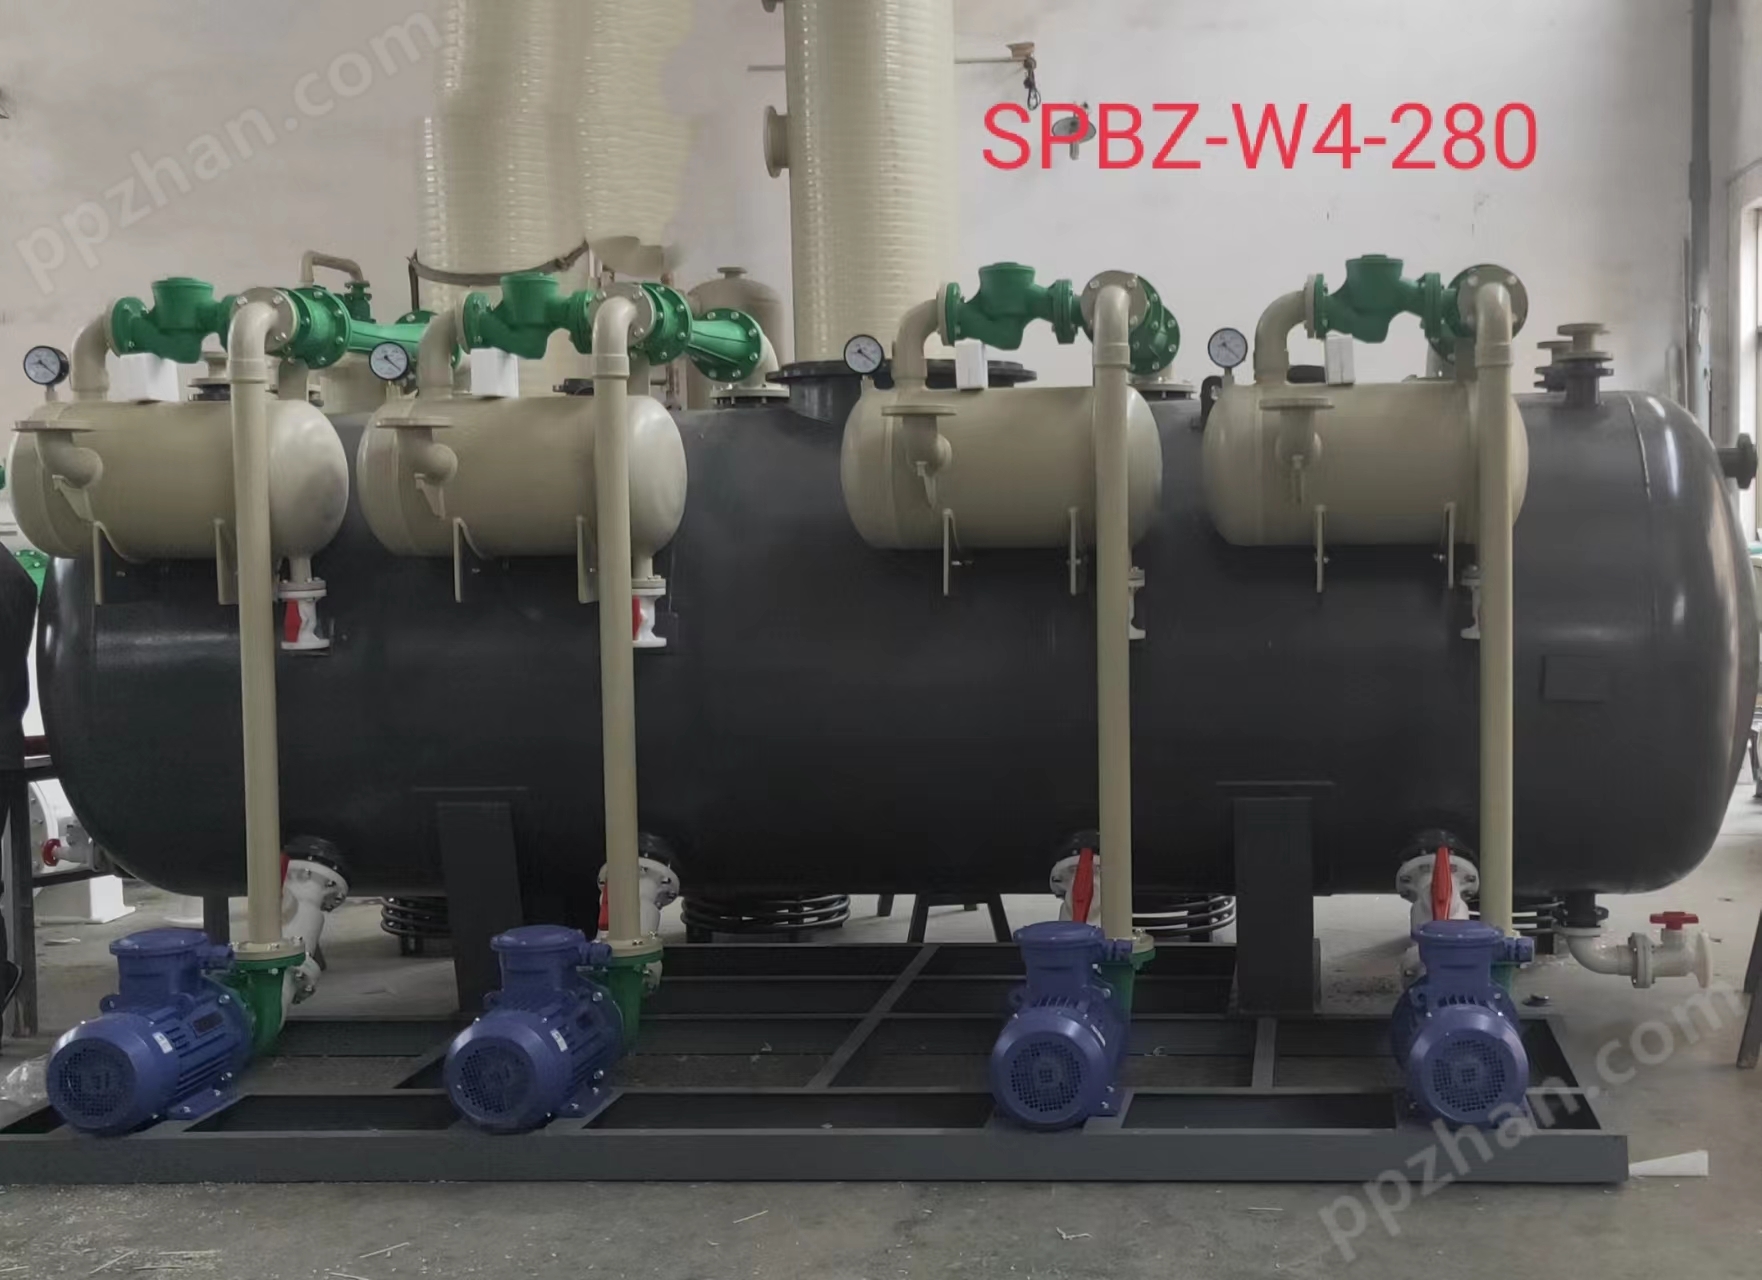 SPBZ-L型水喷射真空泵机组厂家